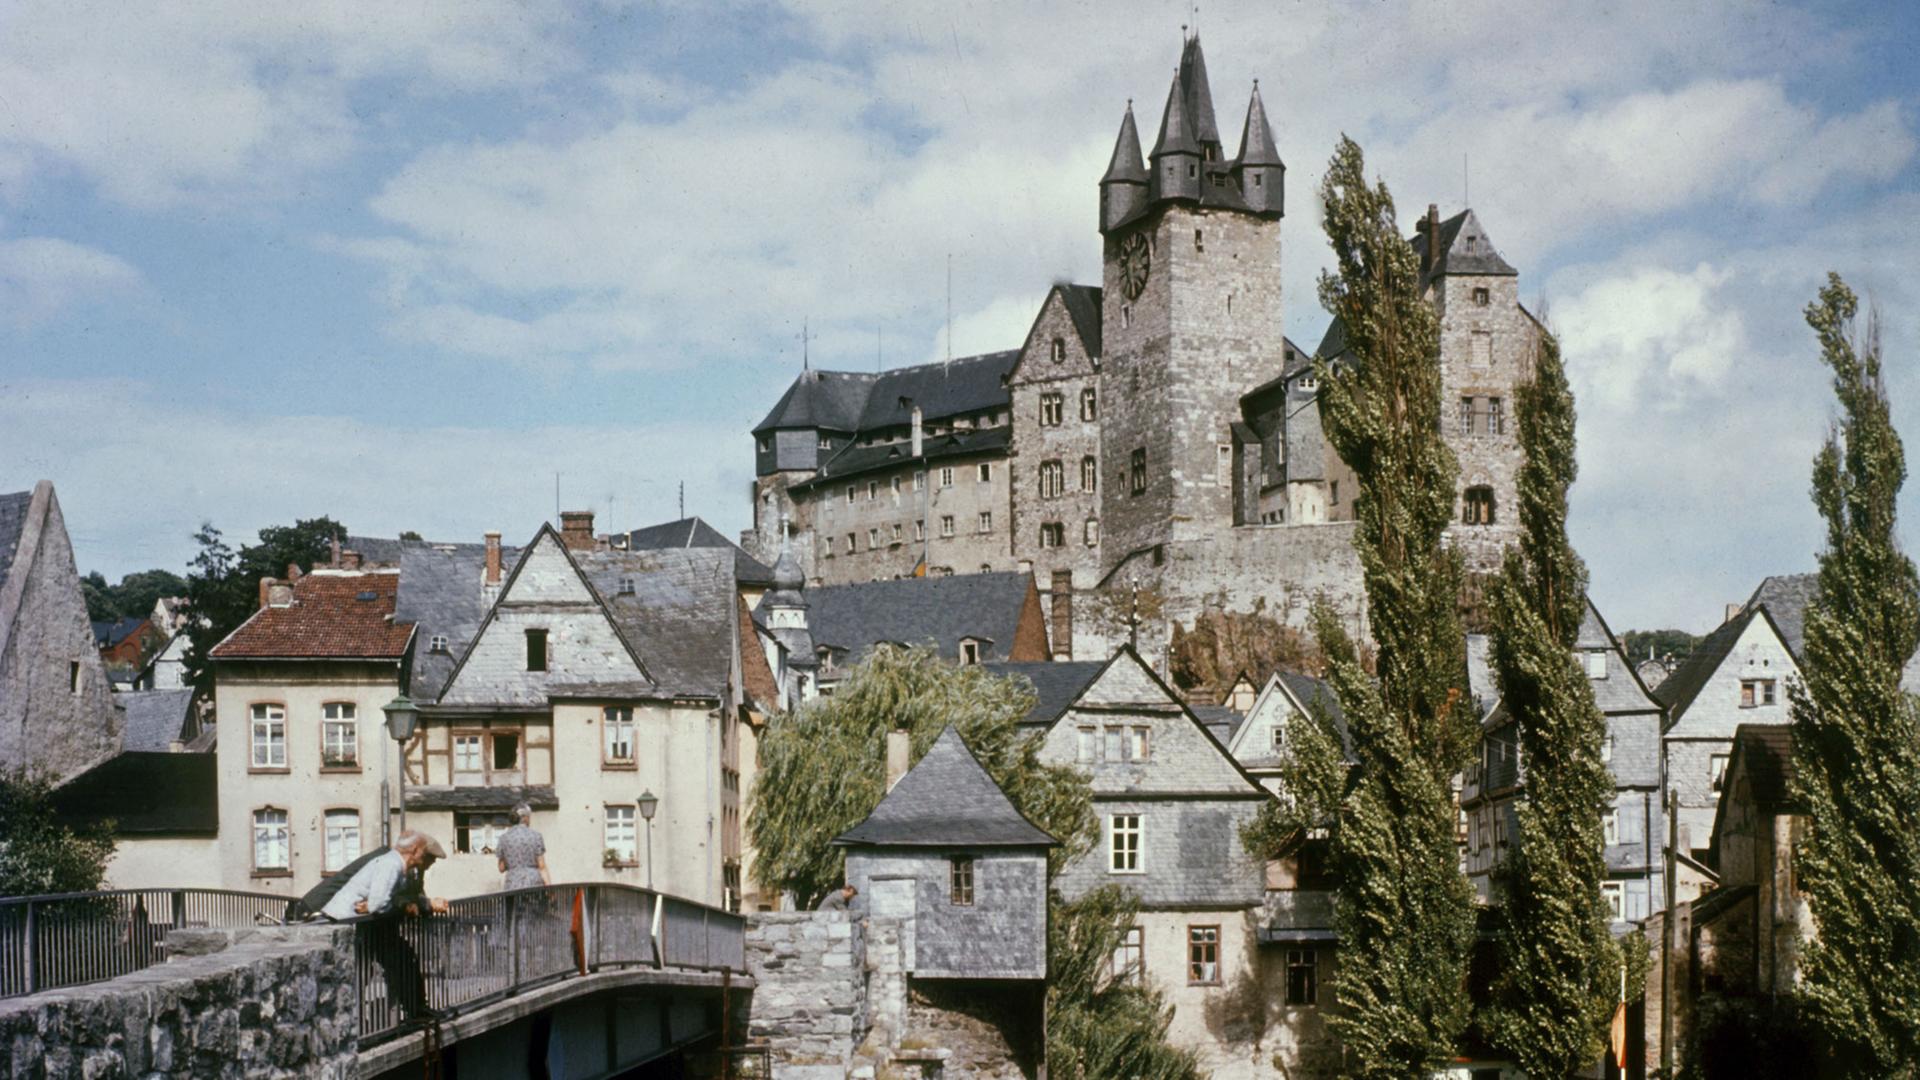 Blick auf das Schloss und einen Teil der rheinland-pfälzischen Stadt Diez.